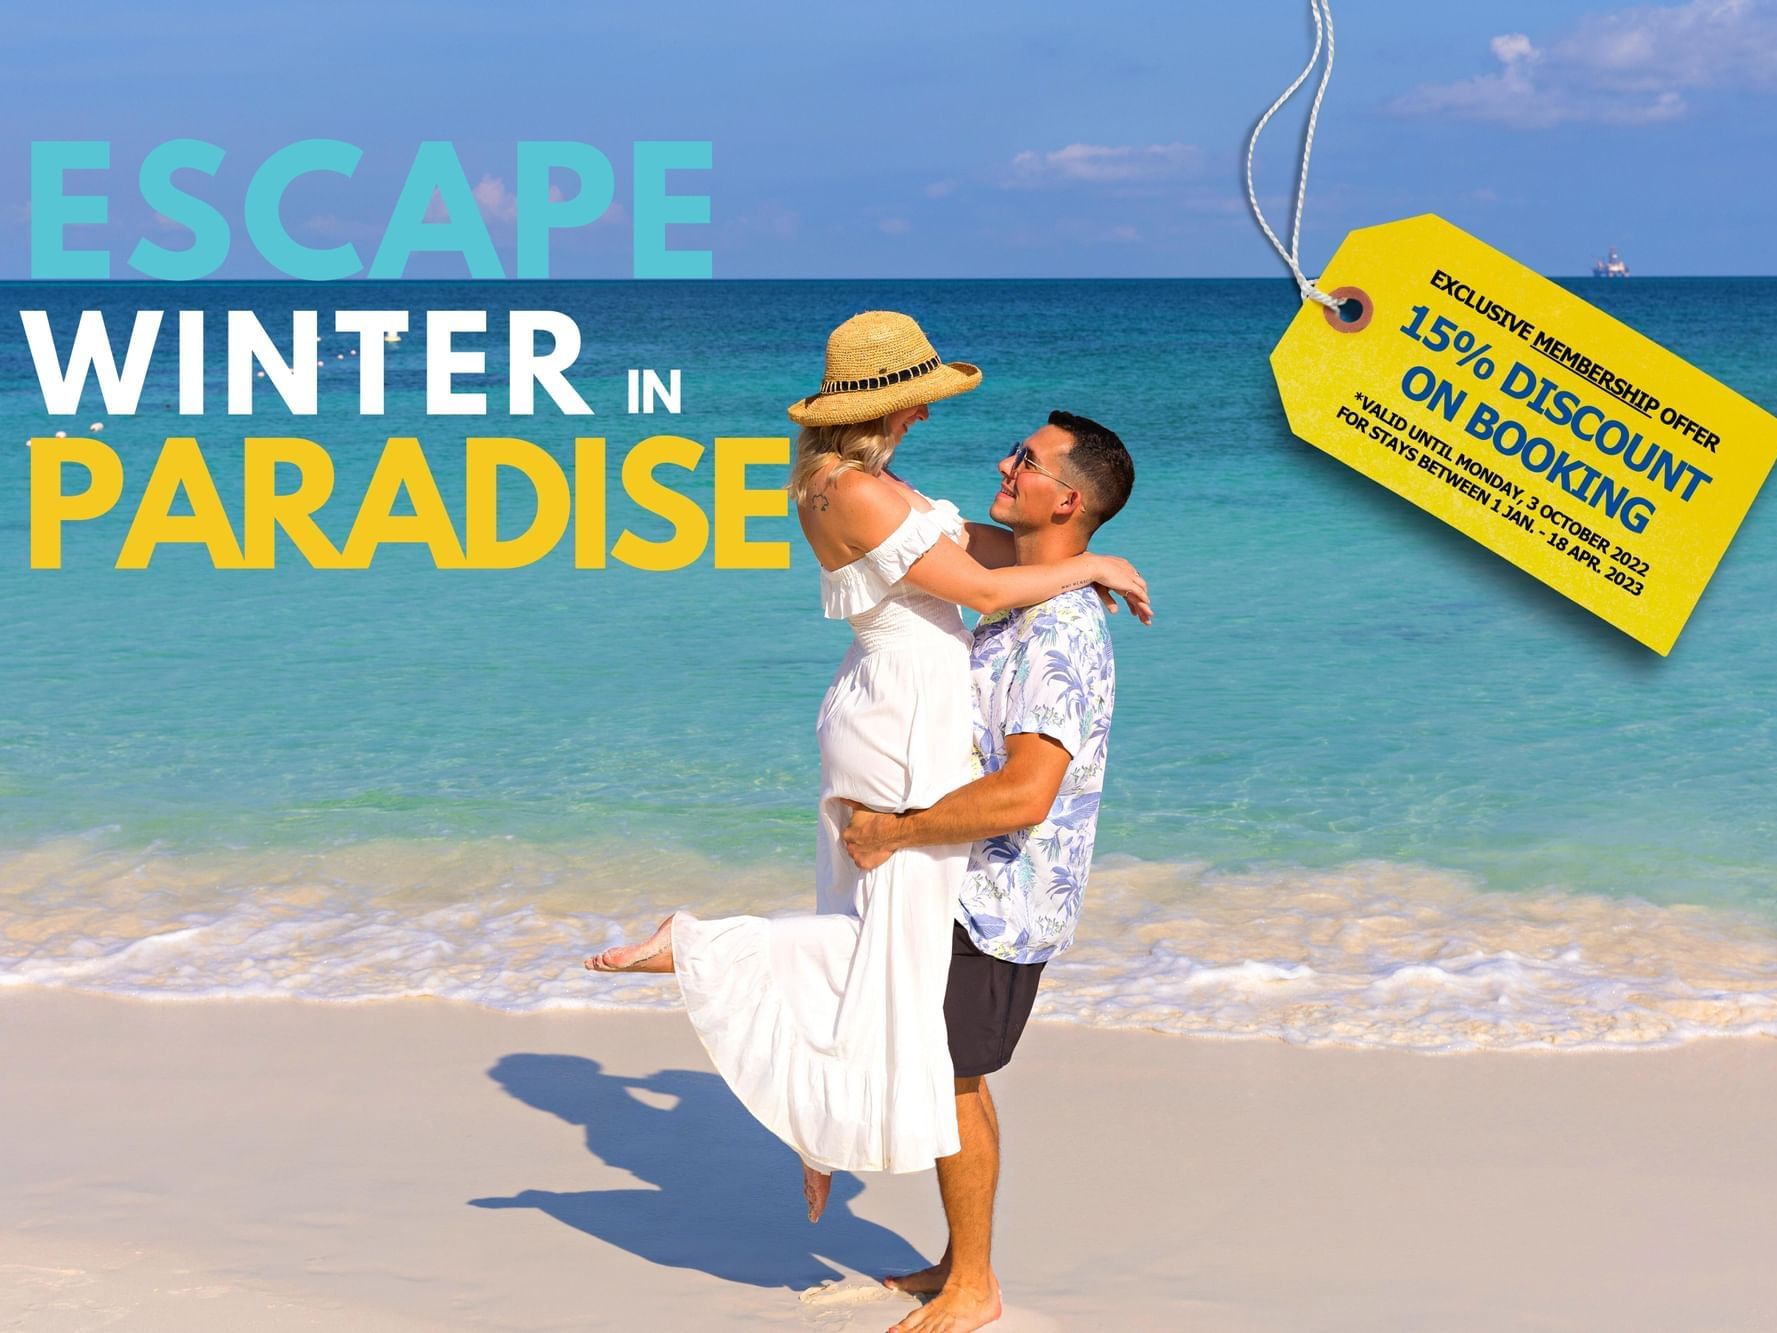 Romantic couple Eagle Beach Amsterdam Manor Beach Resort Aruba. 15% Discount campaign. Escape Winter in Paradise.